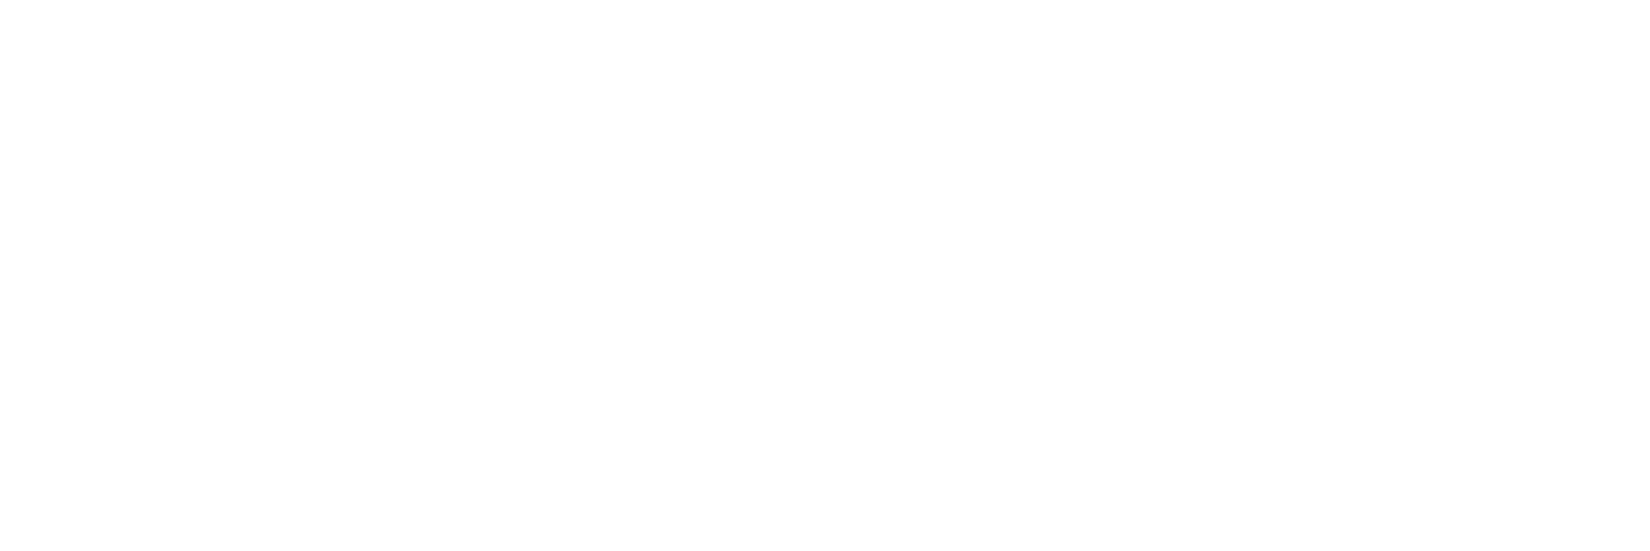 Logo_CentreDeValorisation_FULL_white